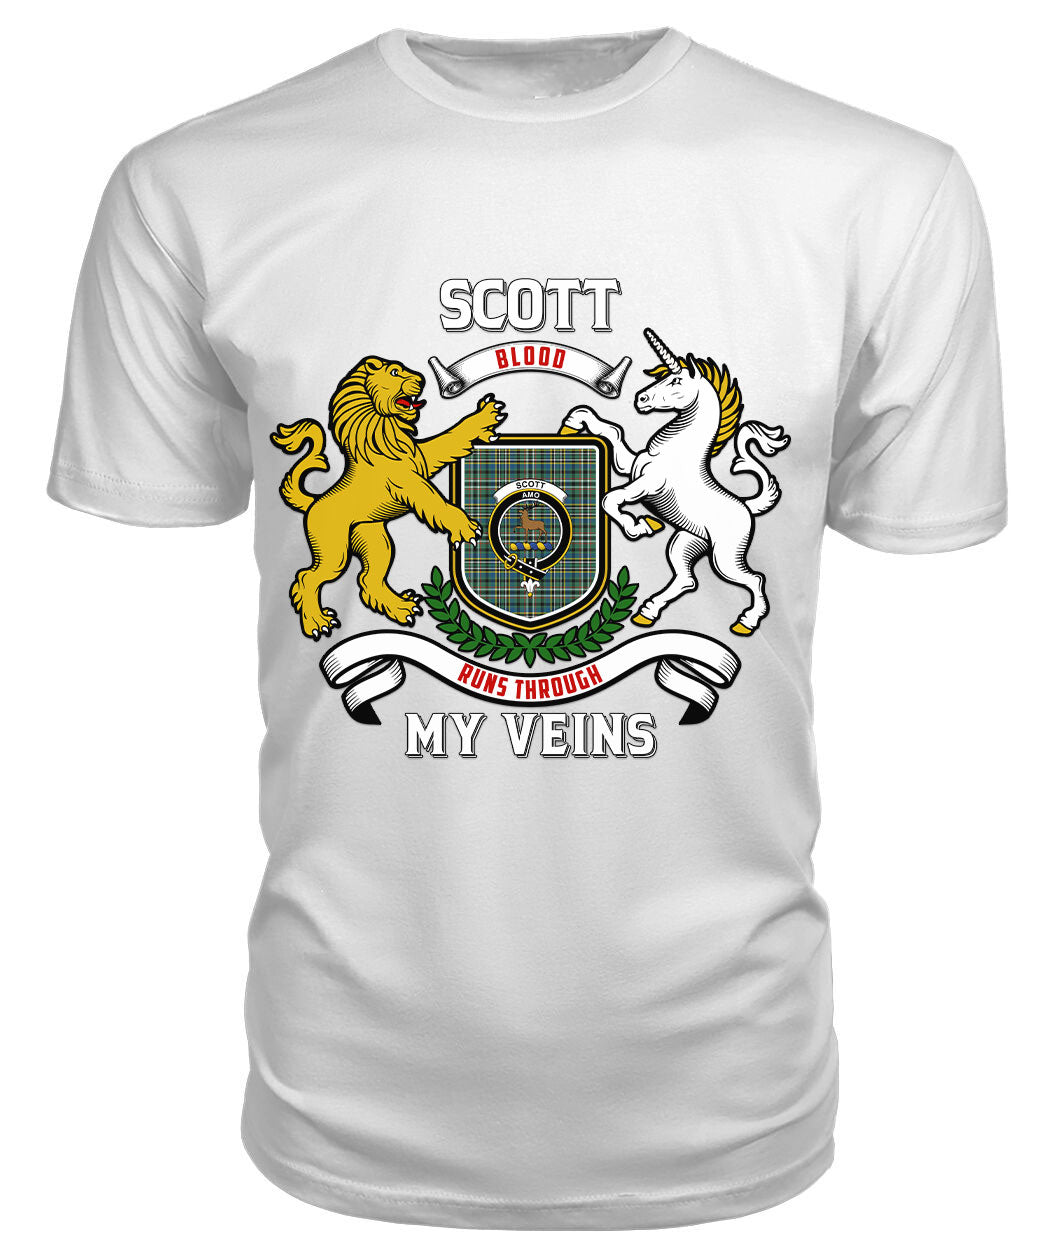 Scott Green Ancient Tartan Crest 2D T-shirt - Blood Runs Through My Veins Style